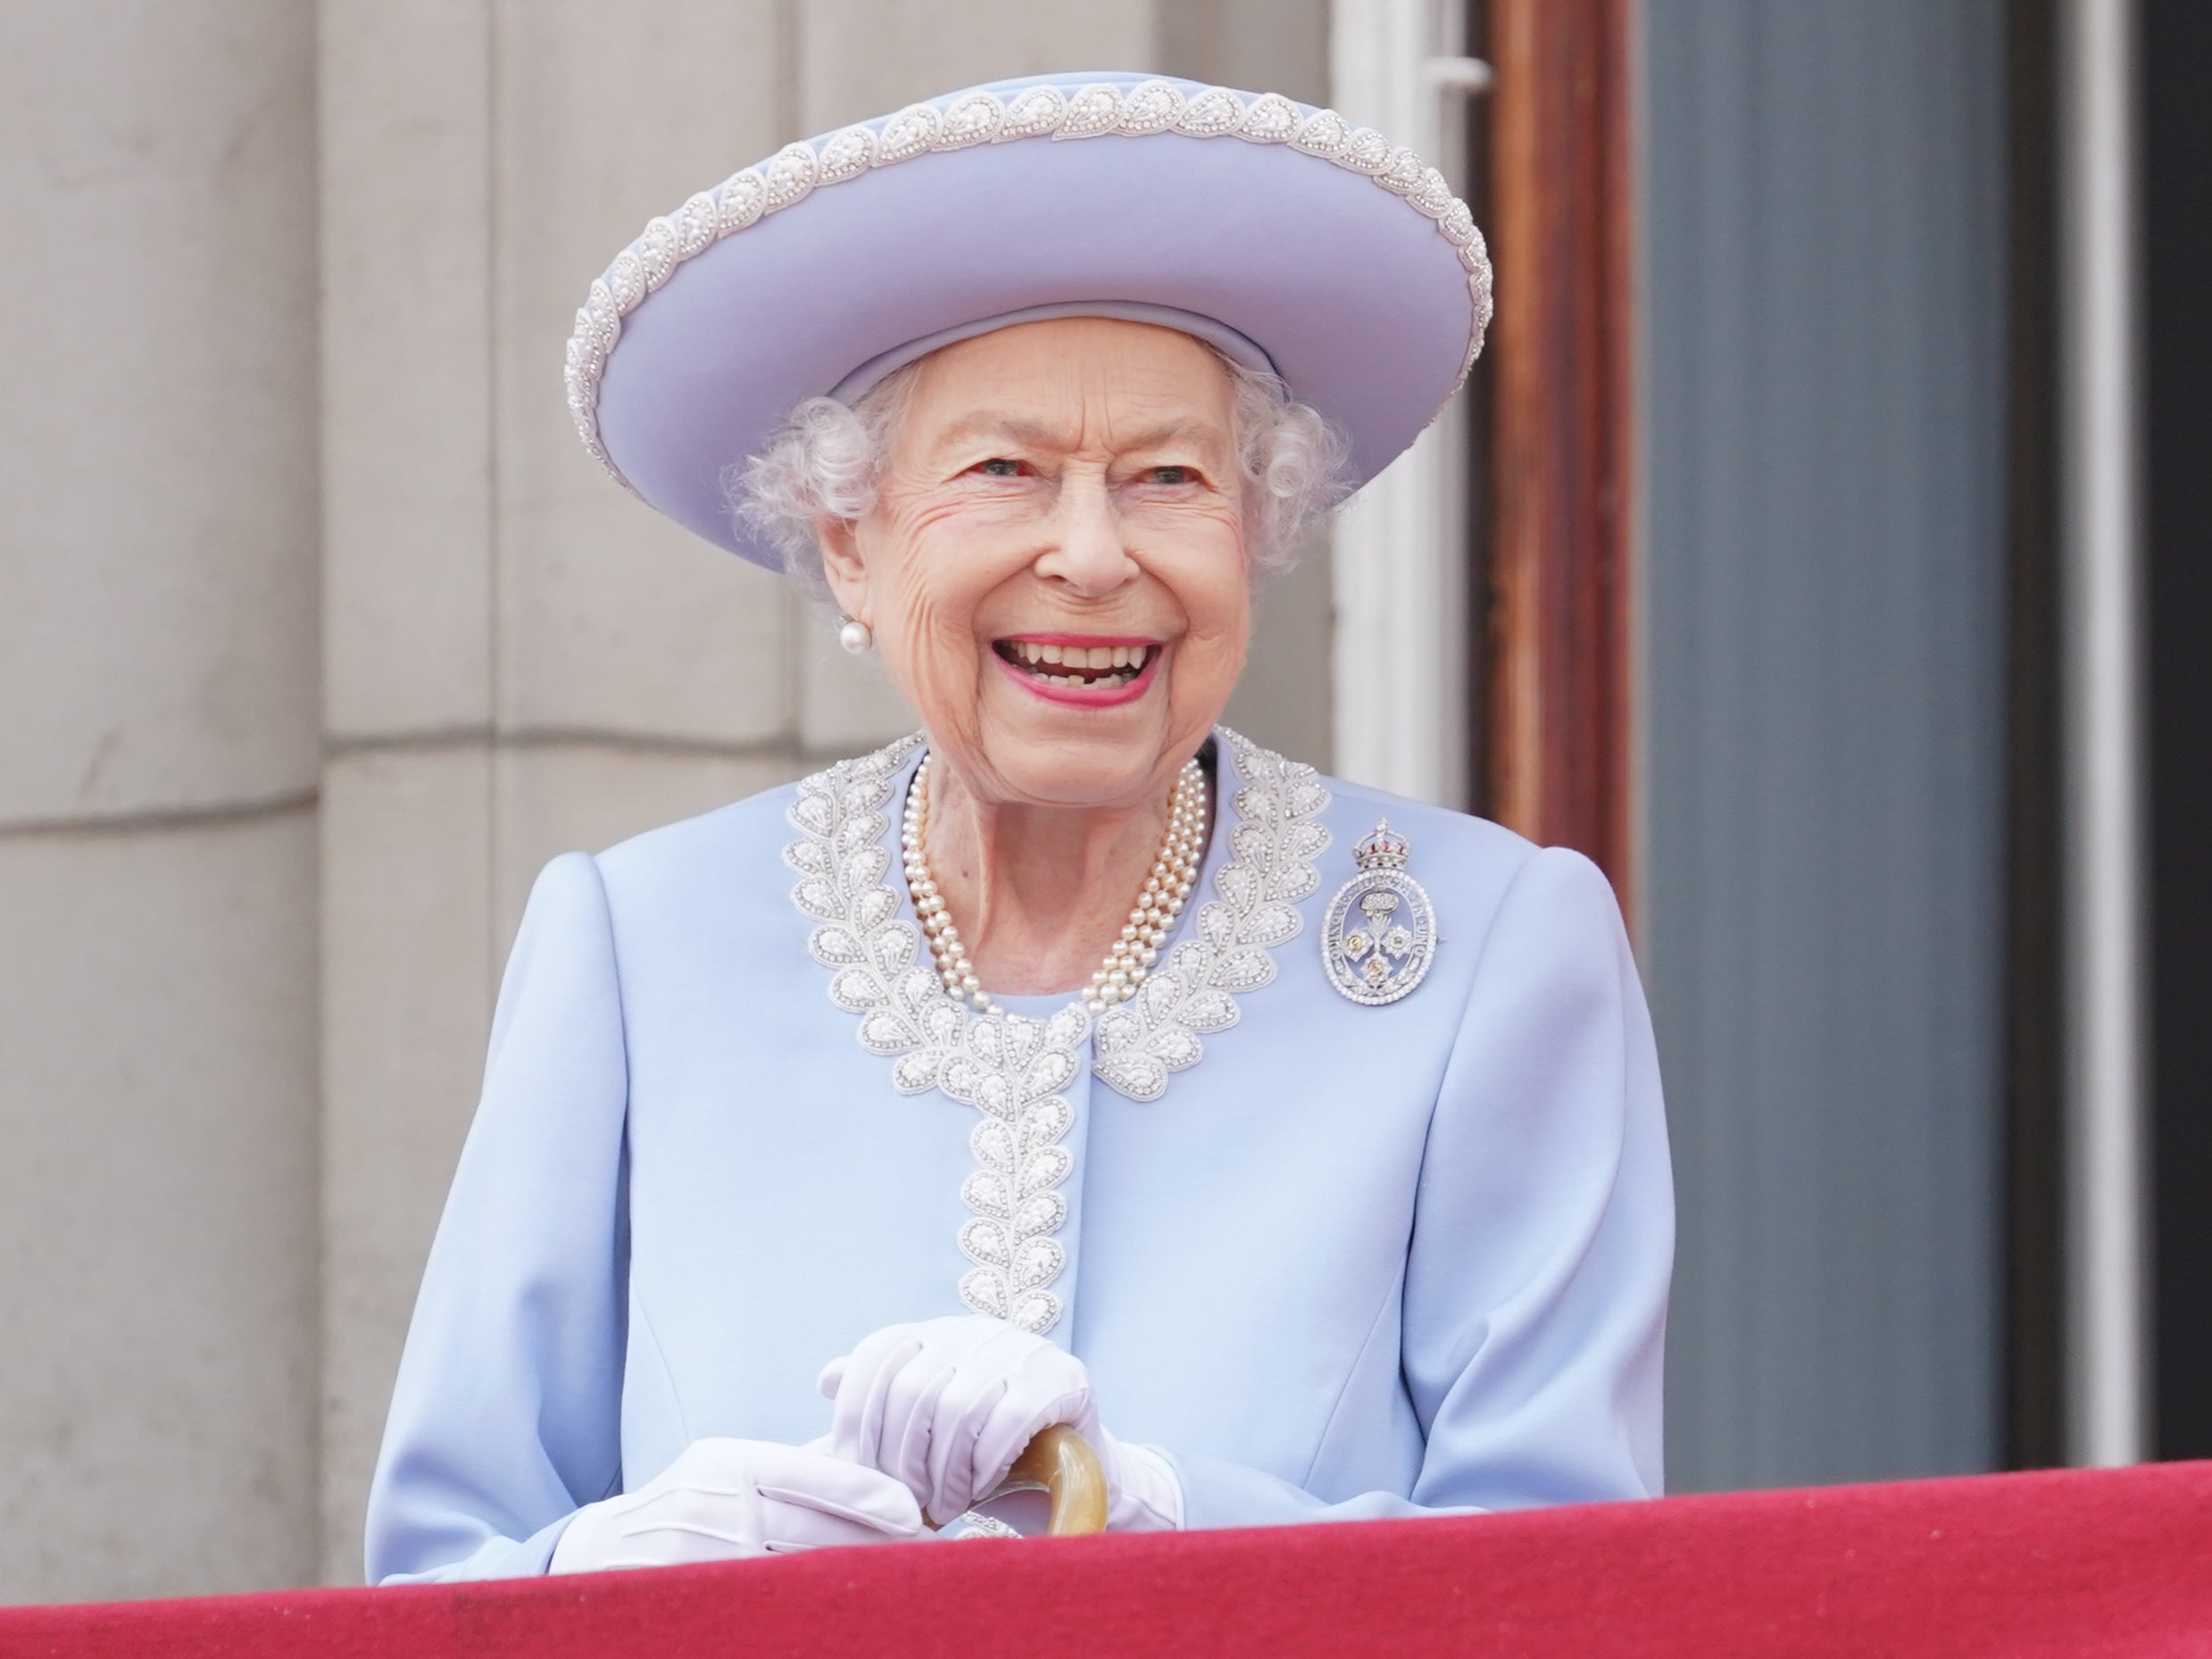 El funeral de la reina será uno de los eventos más grandes que se han realizado en el Reino Unido en décadas